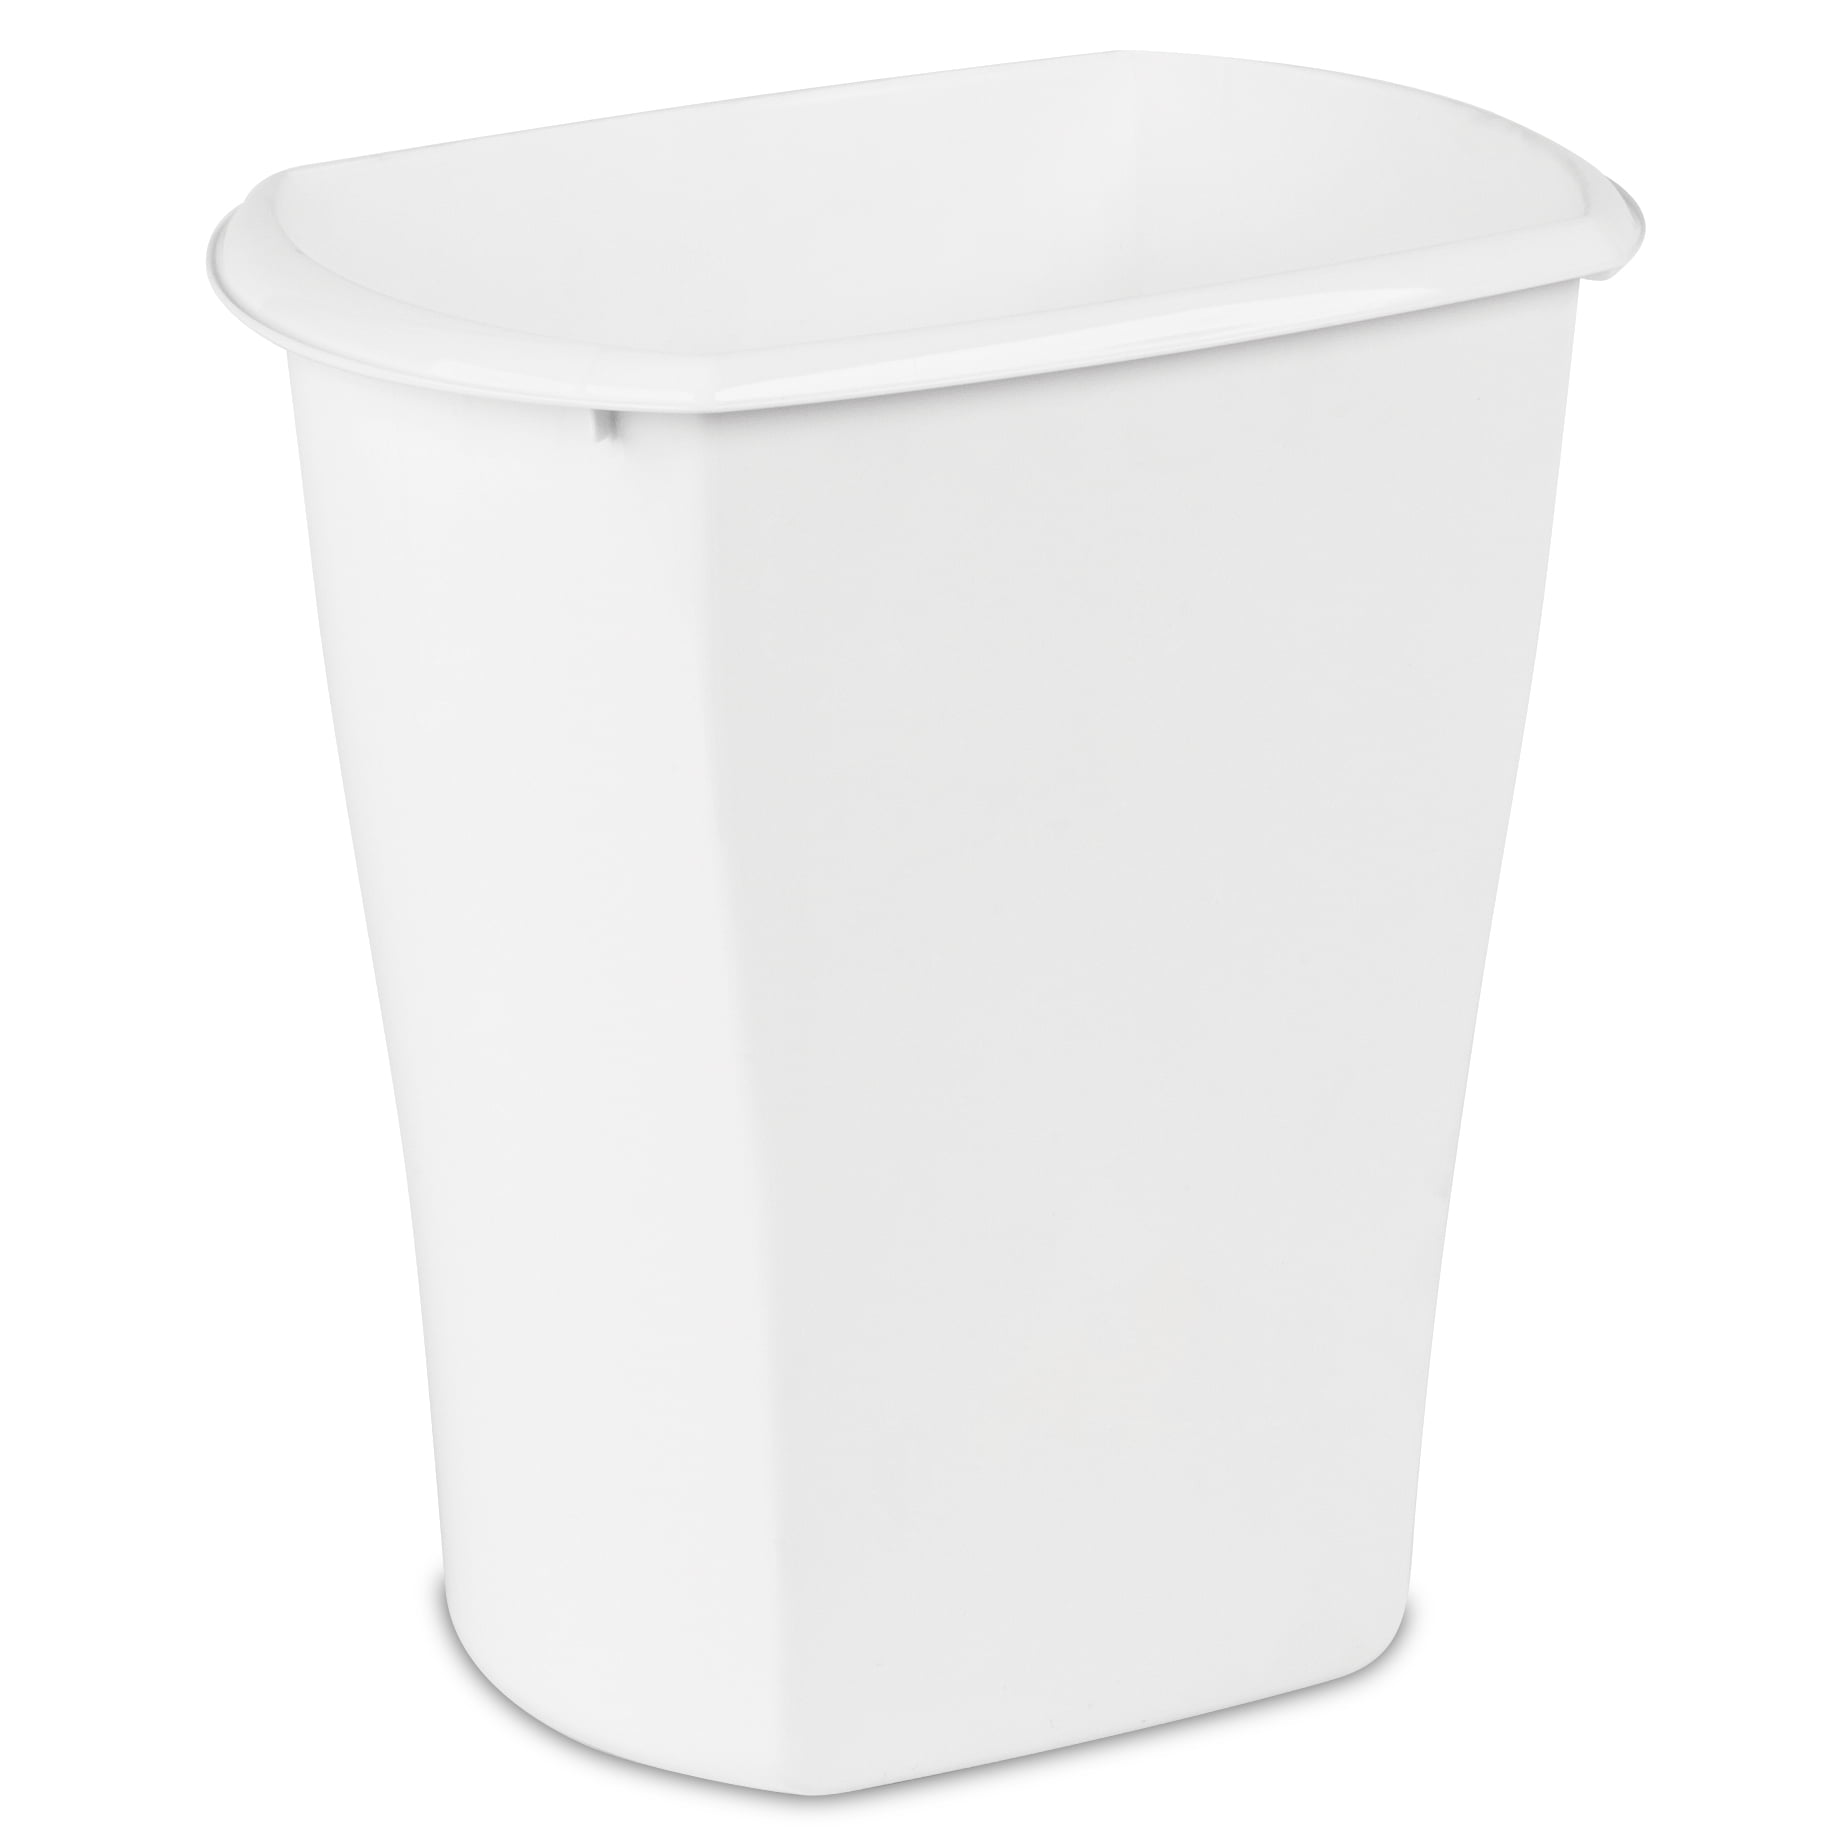 Sterilite 3 Gallon Trash Can, Plastic Bathroom or Office Trash Can, White